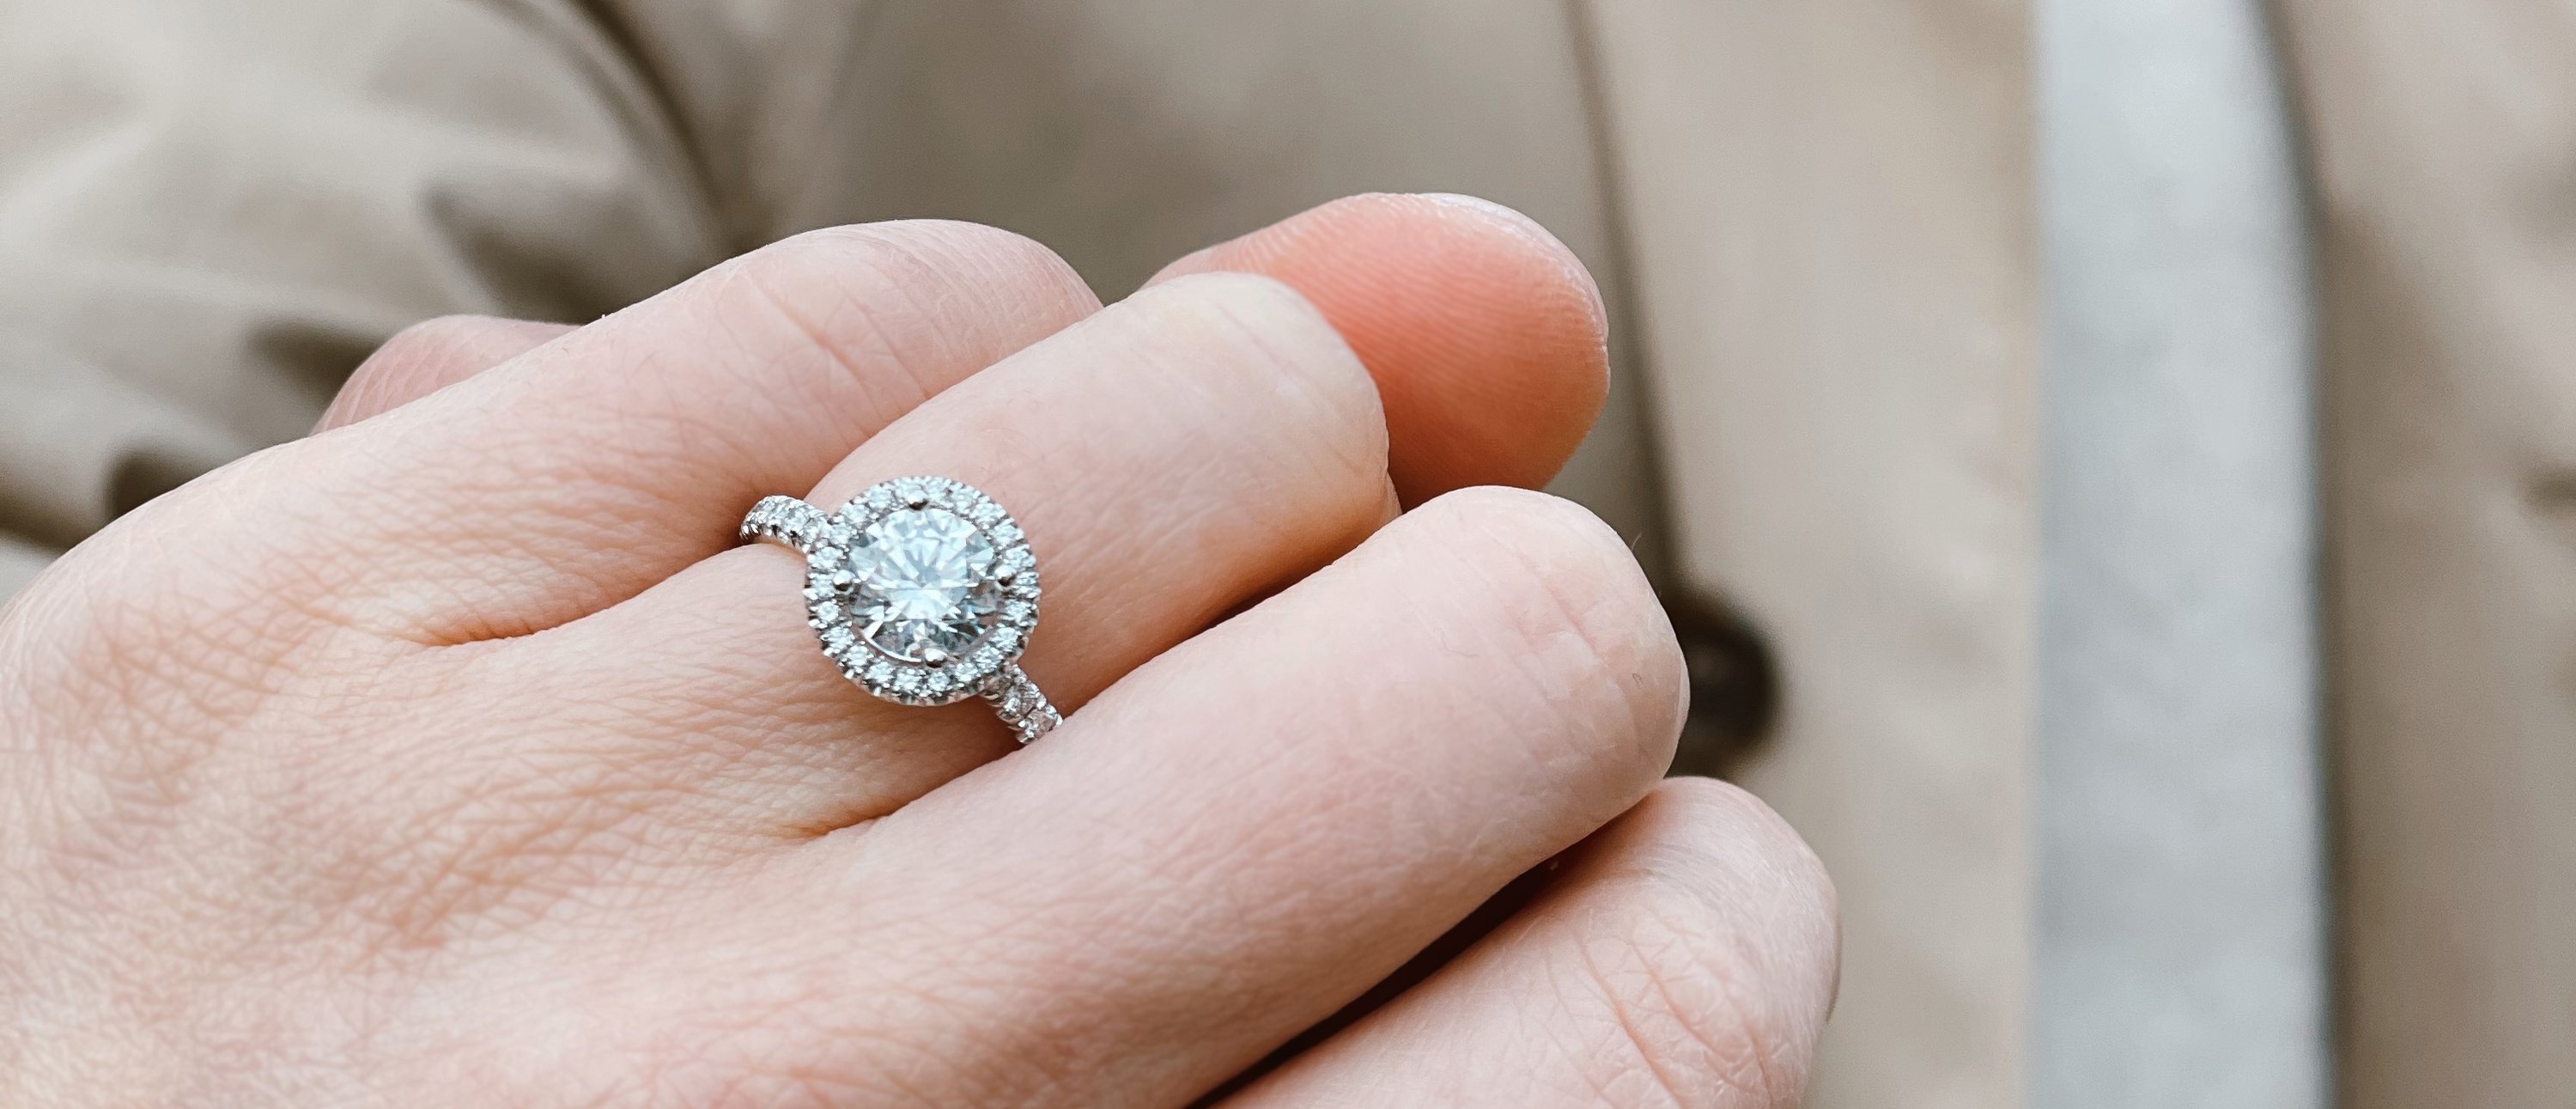 Engagement Ring Buying Guide - BAUNAT